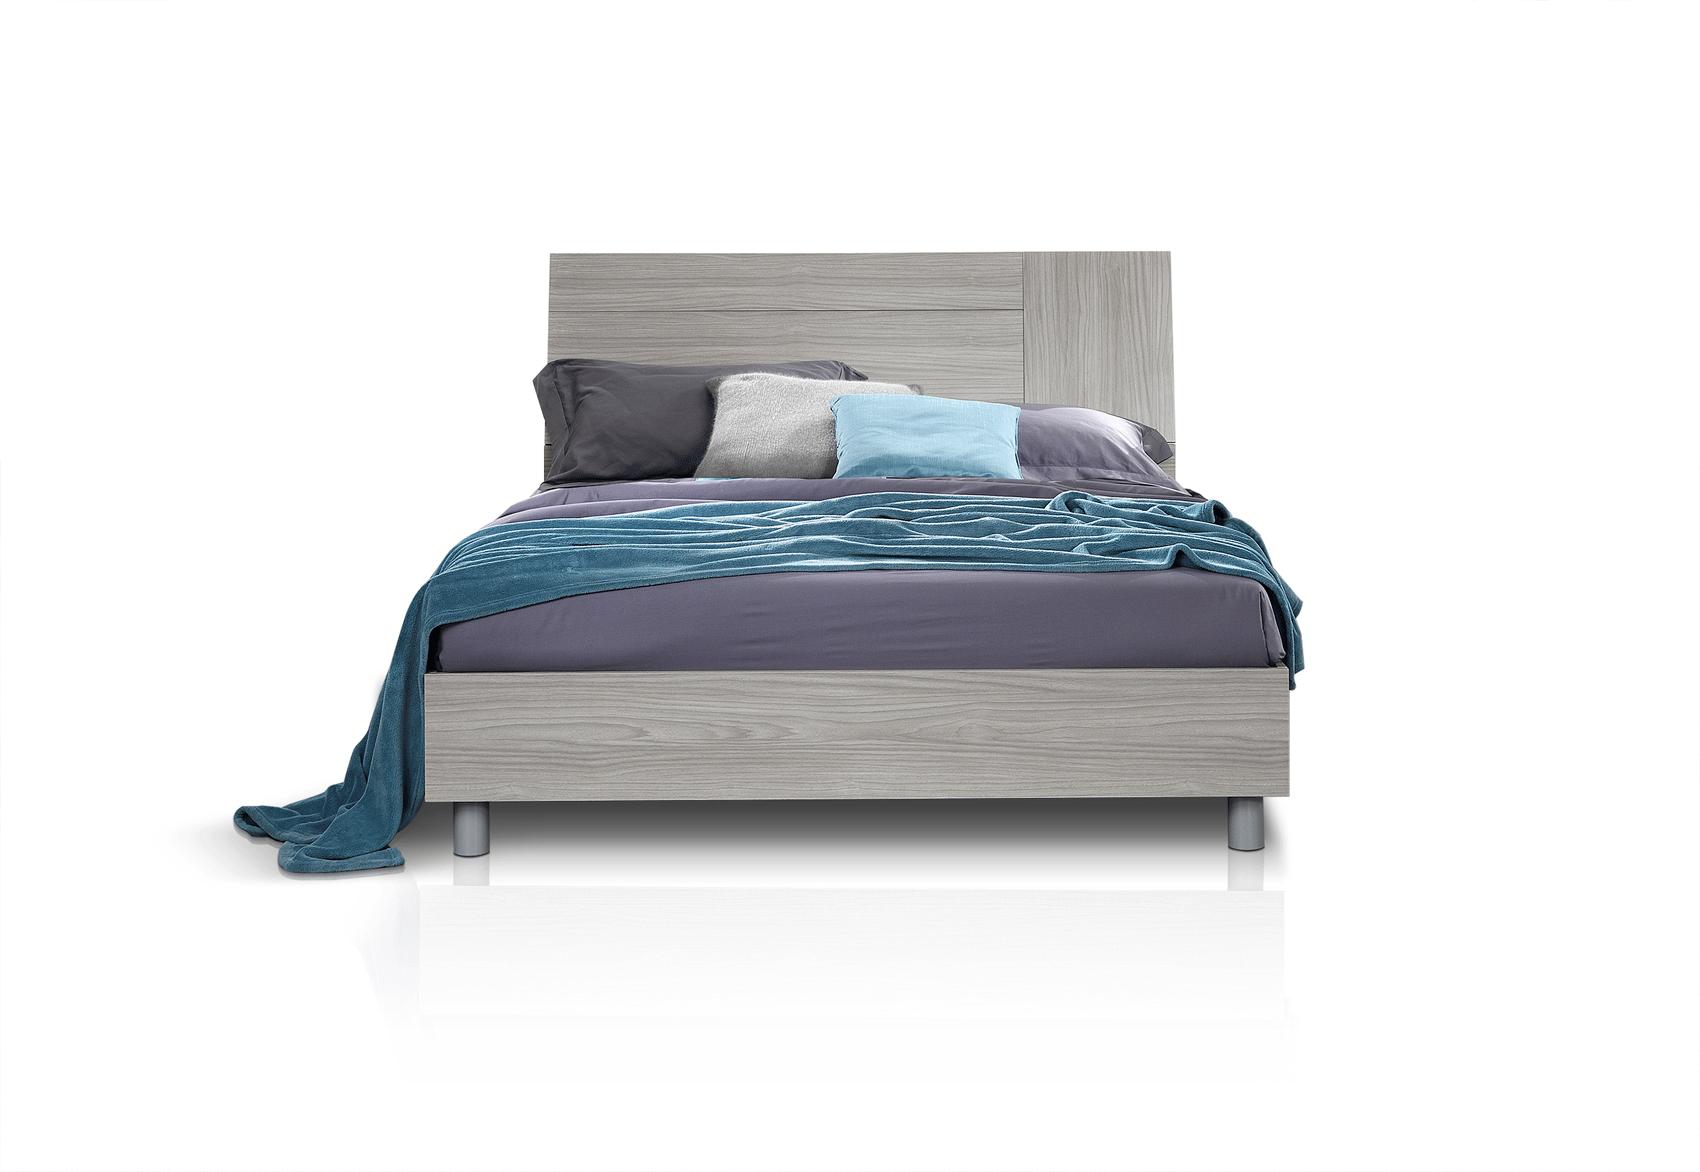 Contemporary, Modern Platform Bed LINOSAQS LINOSAQS in Silver, Gray 